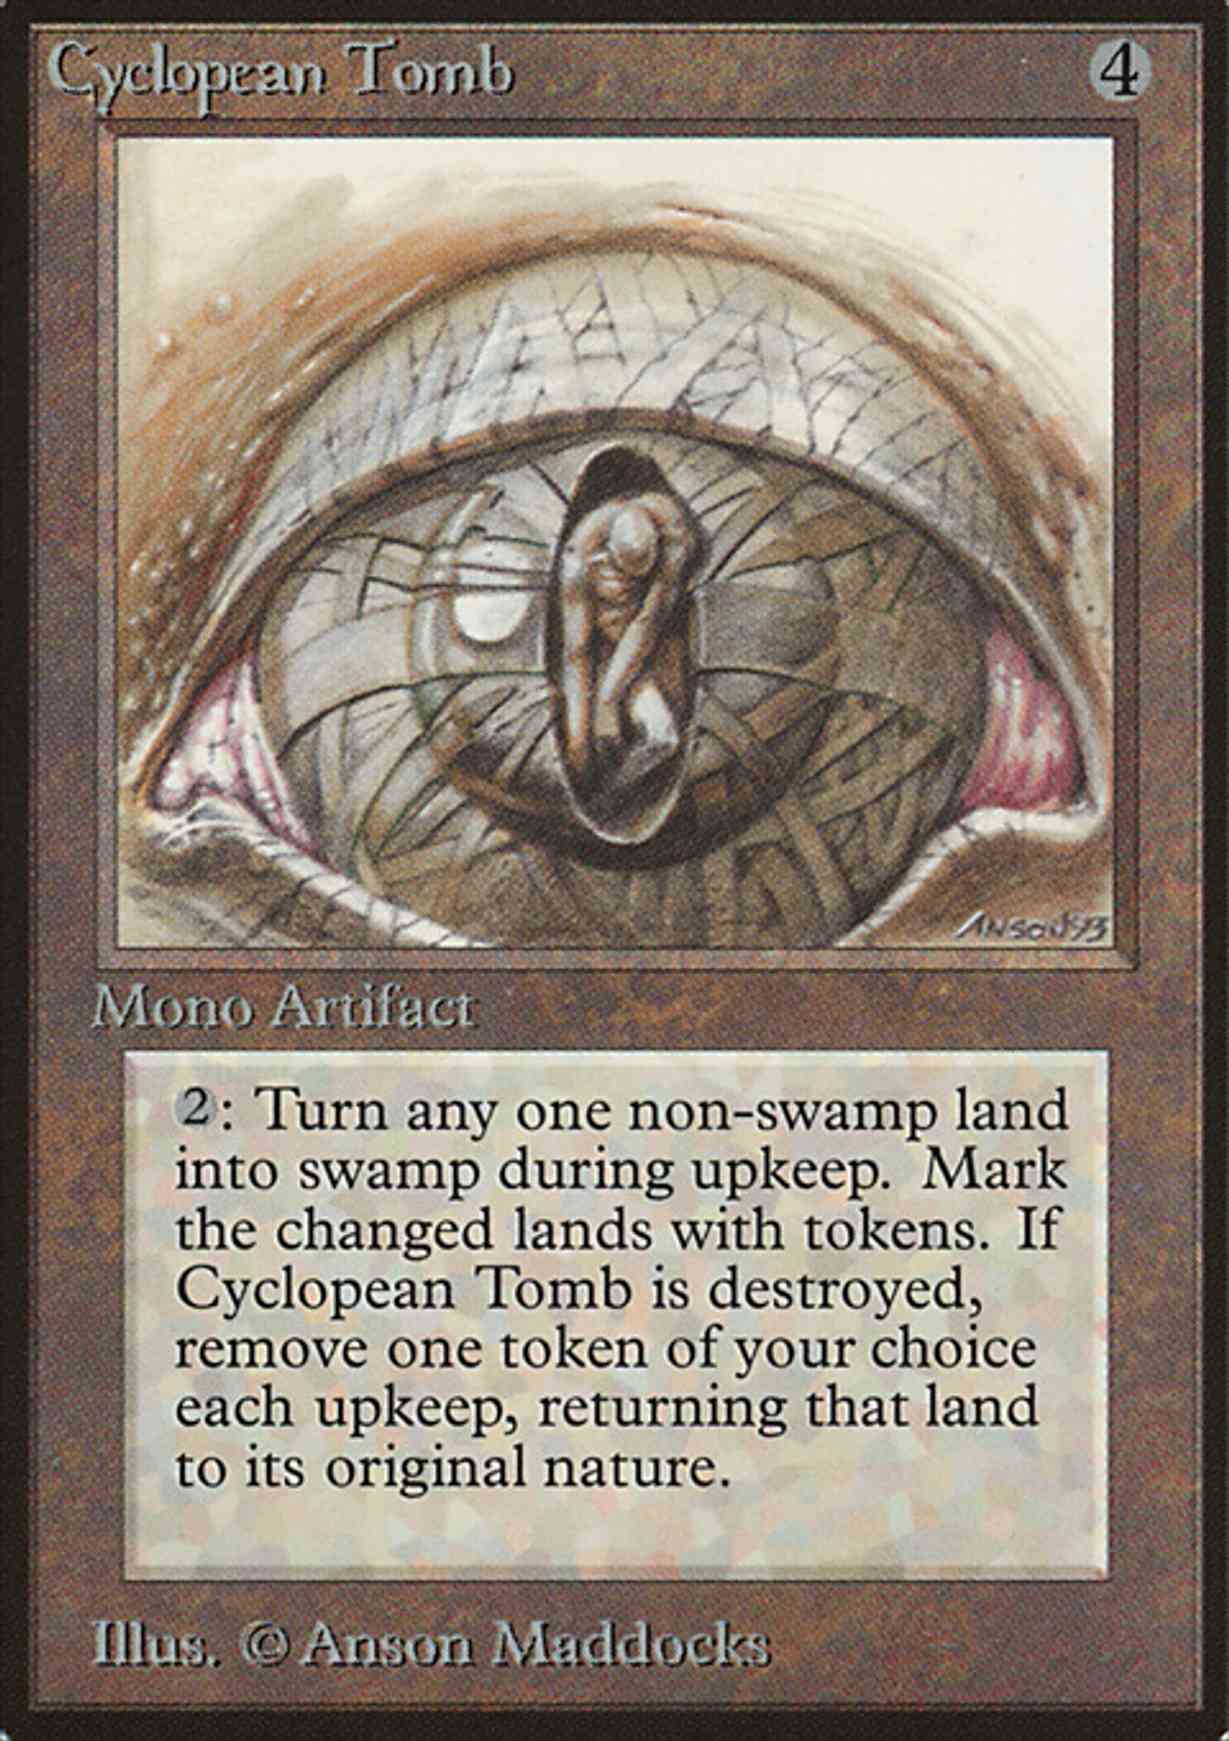 Cyclopean Tomb magic card front